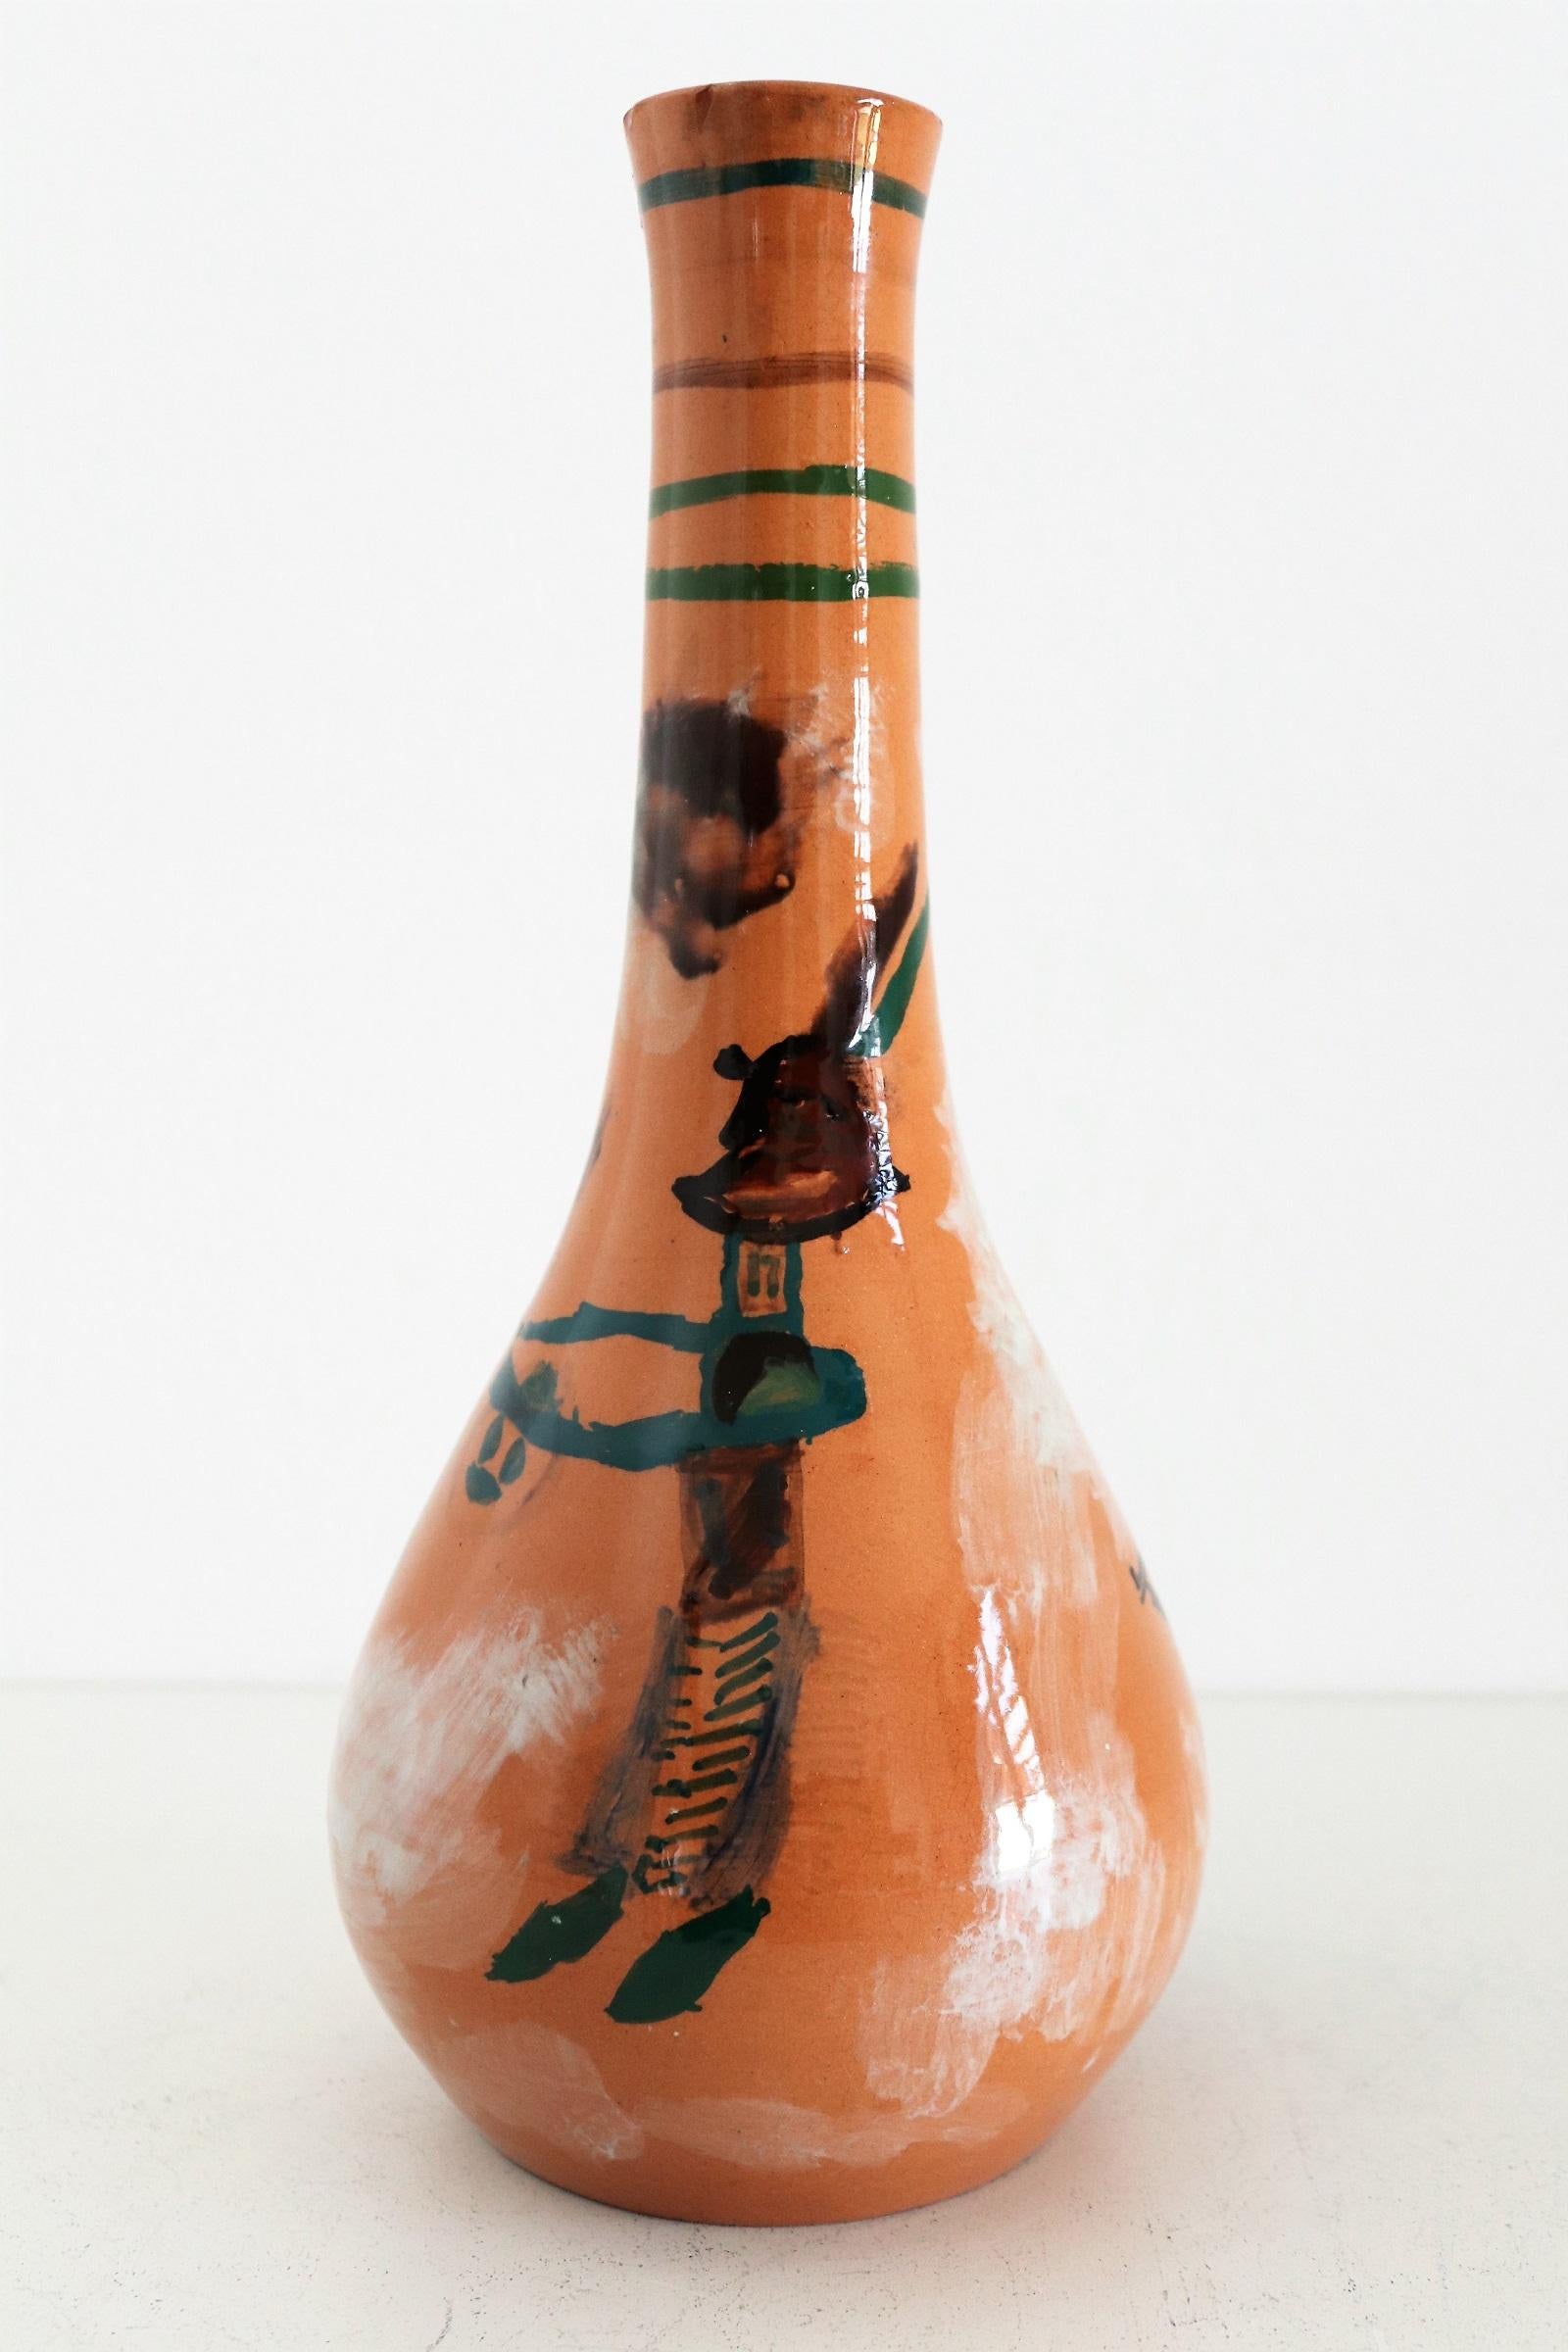 Wunderschöne und seltene, einzigartige Keramikvase, handbemalt und signiert mit G.R. vom Künstler des italienischen Keramikstudios Orobico Arte Artigianato (ART RUMI) in den 1950er Jahren.
Die Vase ist aus keramischem, rotem Ton gefertigt und von